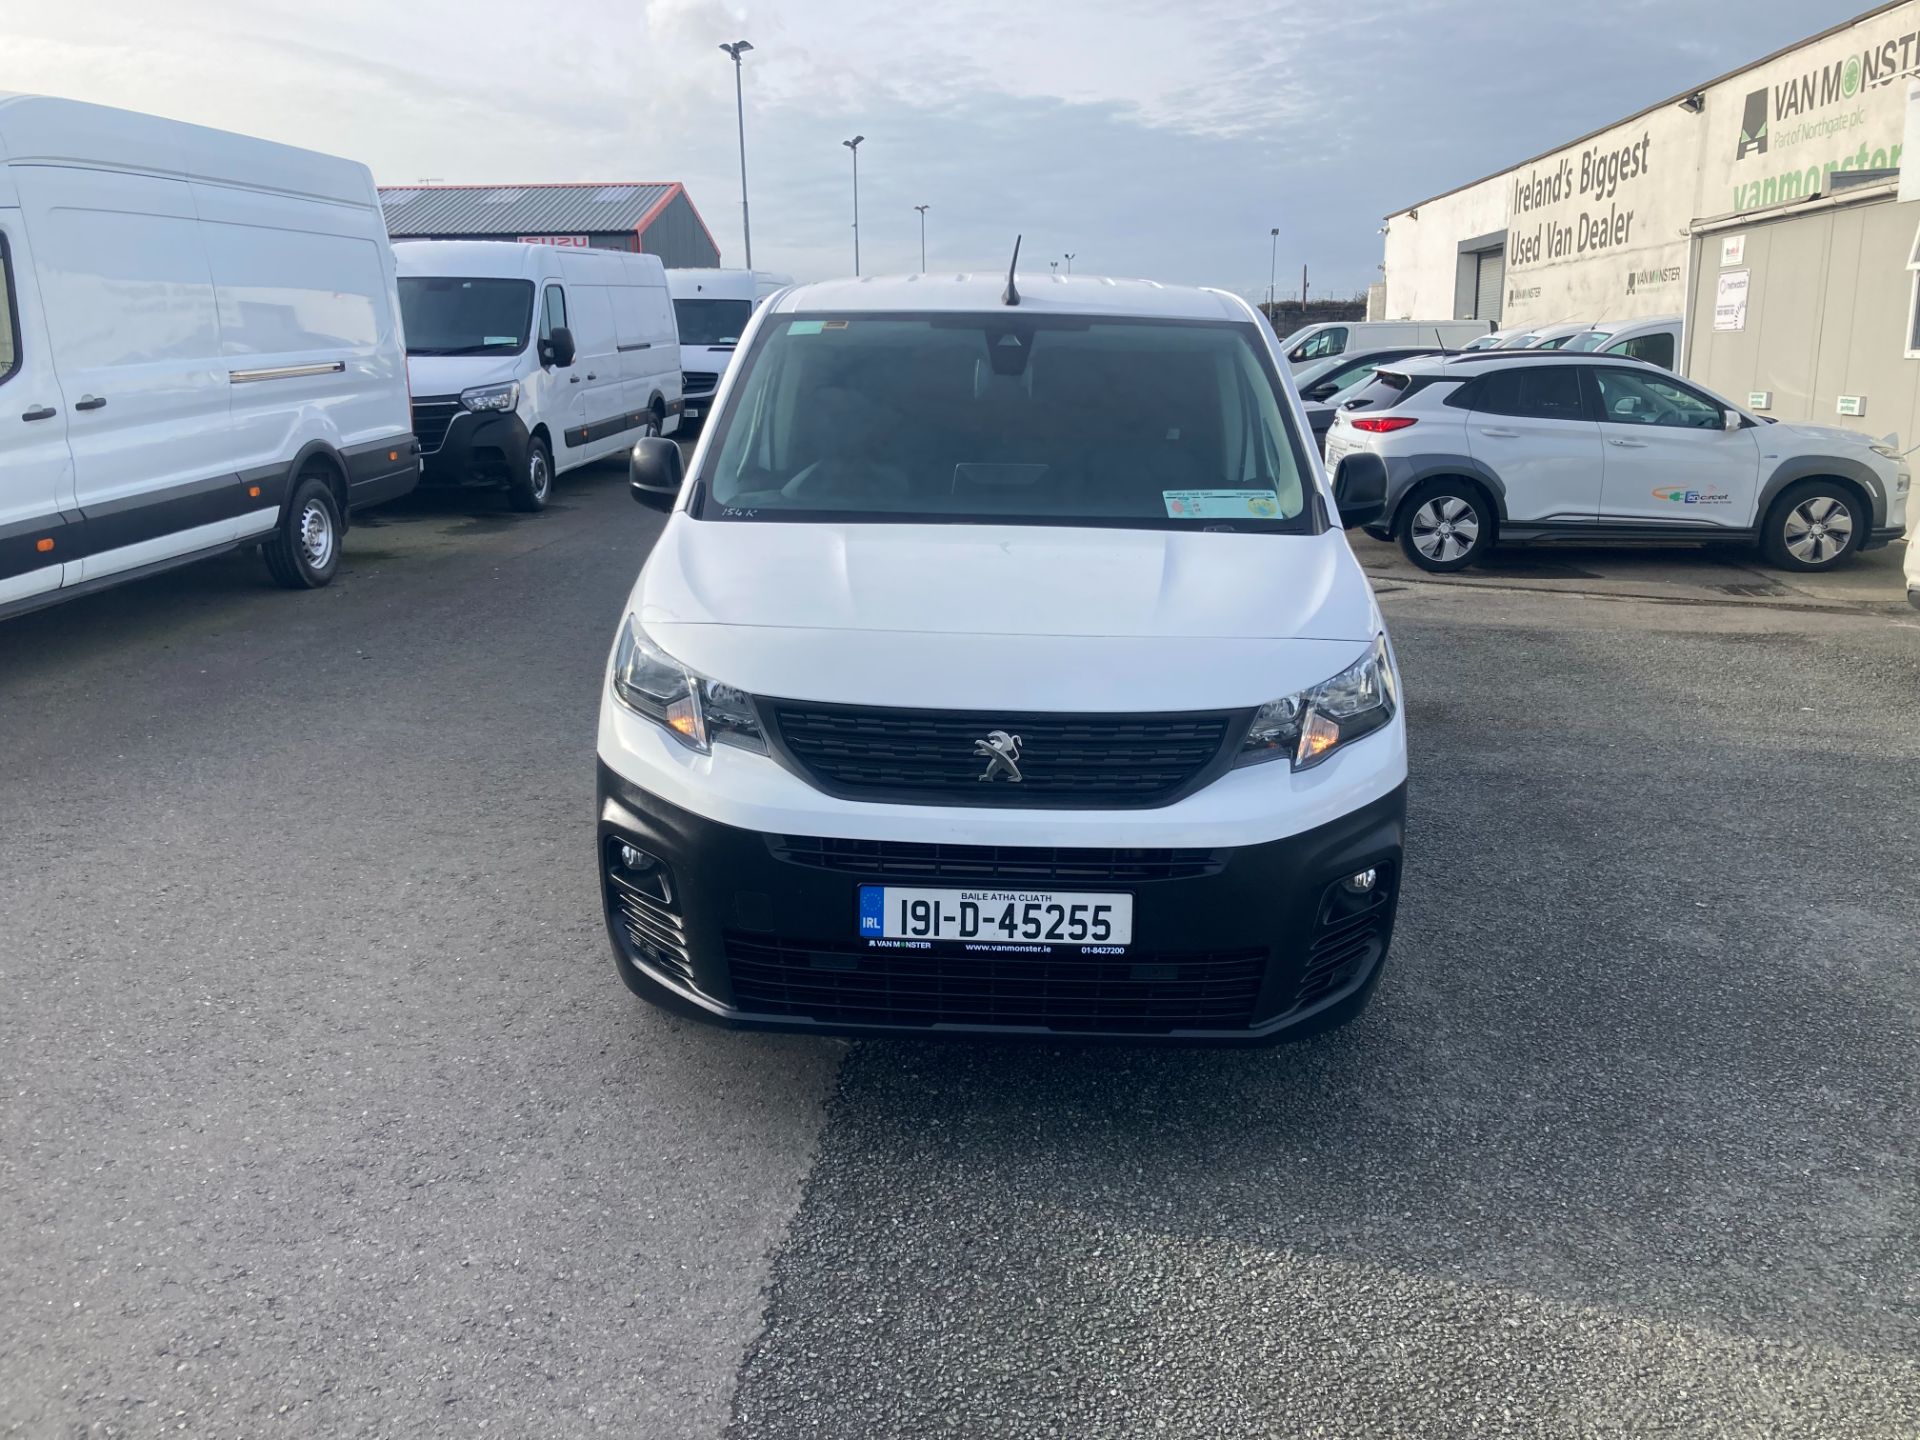 2019 Peugeot Partner Prof Plus 1.6hdi 100 1000KG 2D (191D45255) Image 2